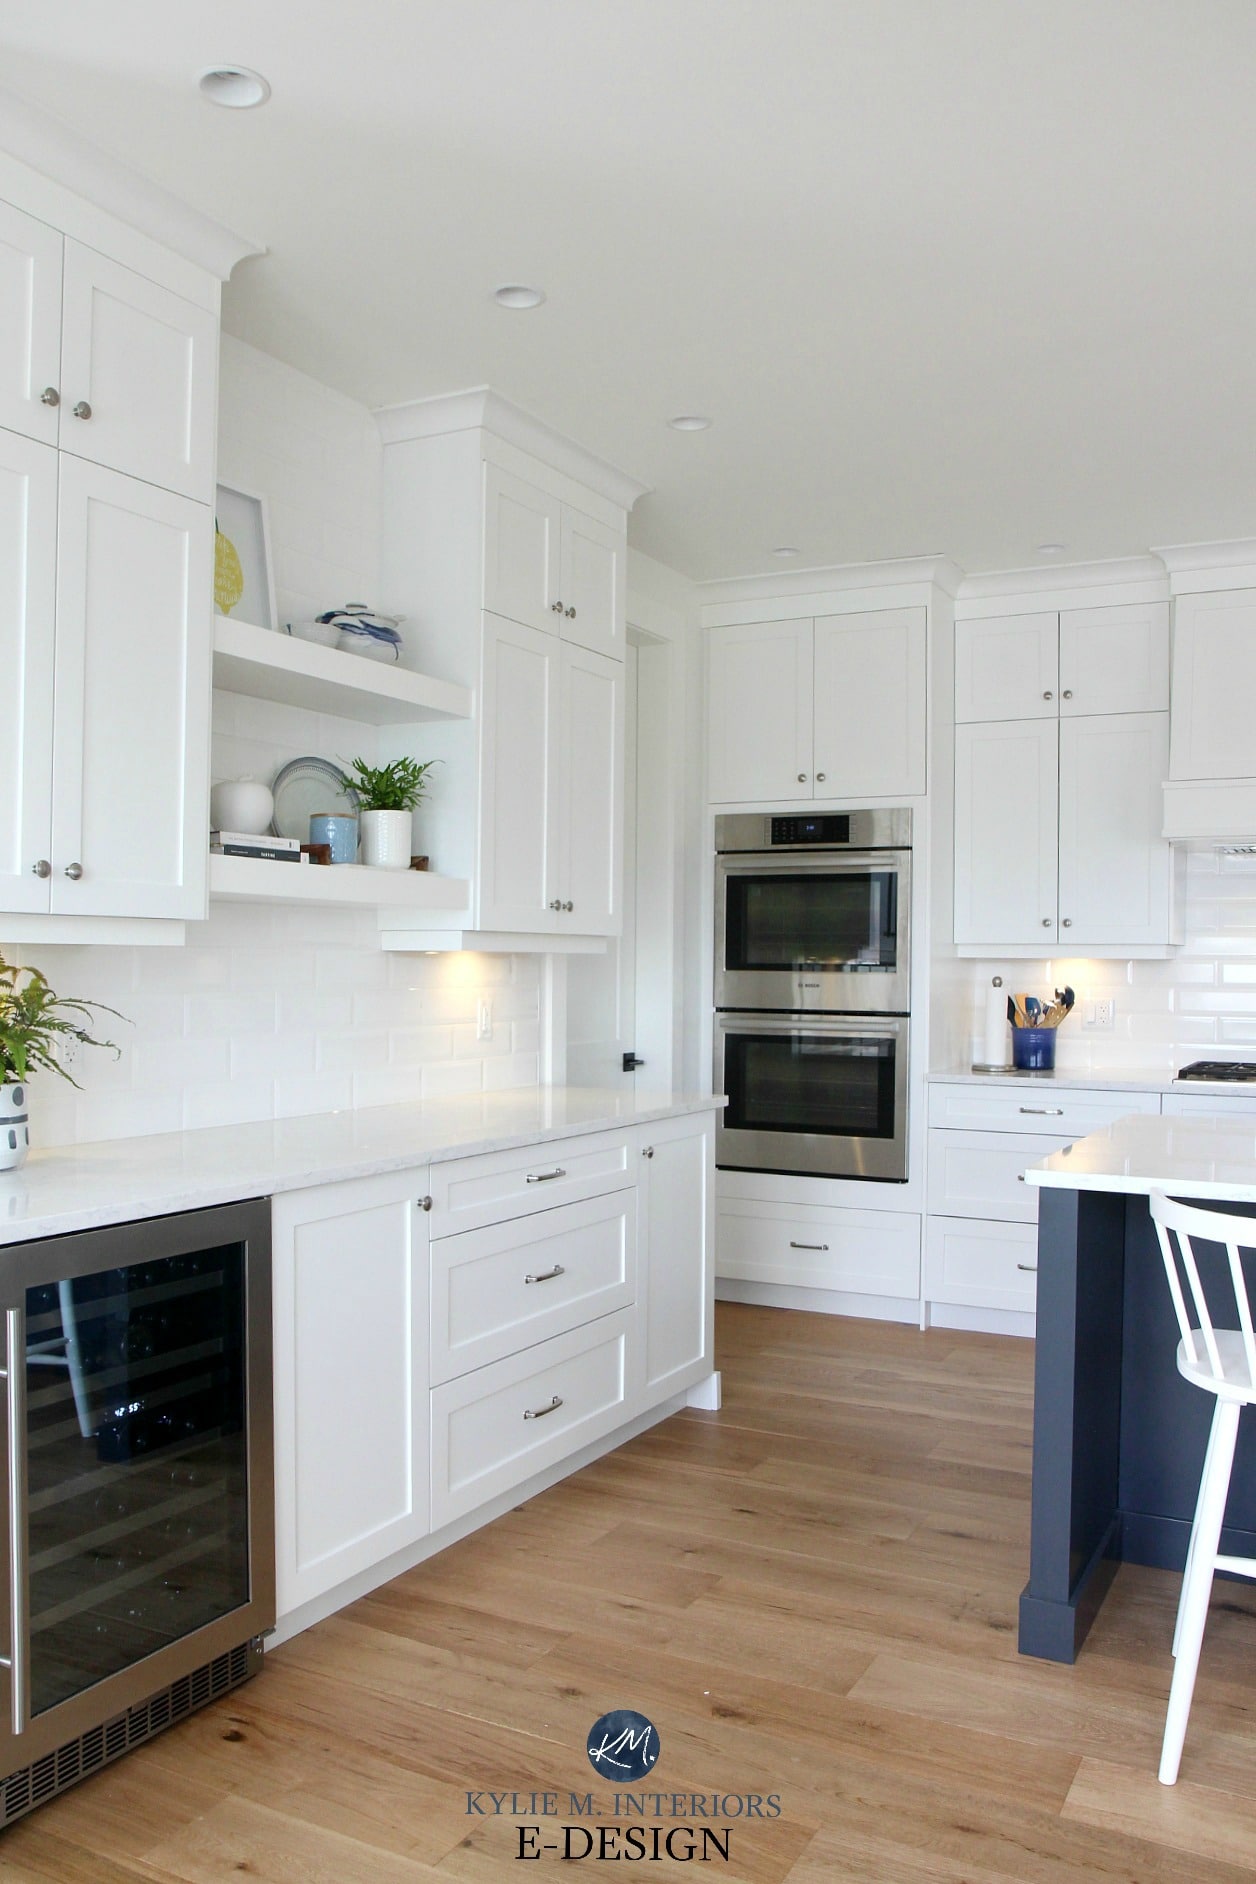 Kylie M Interiors Edesign. Pure White kitchen cabinets, white oak